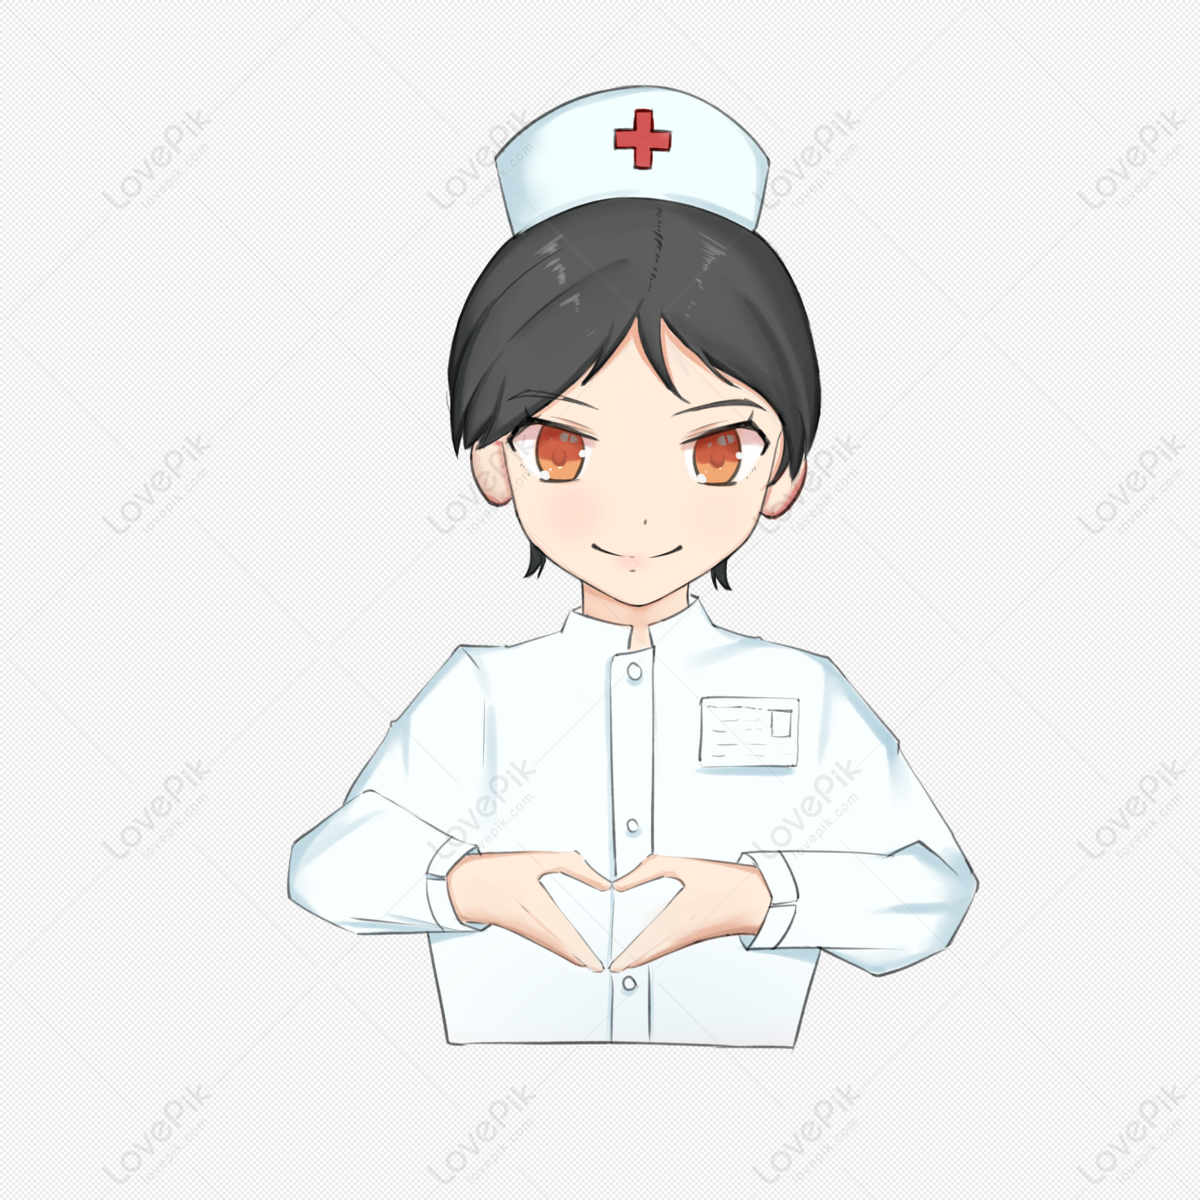 Tận hưởng hình ảnh y tá chăm sóc cho bệnh nhân đầy tình cảm và nhân ái, khiến bạn tin rằng thế giới này còn rất nhiều tình người tốt đẹp.